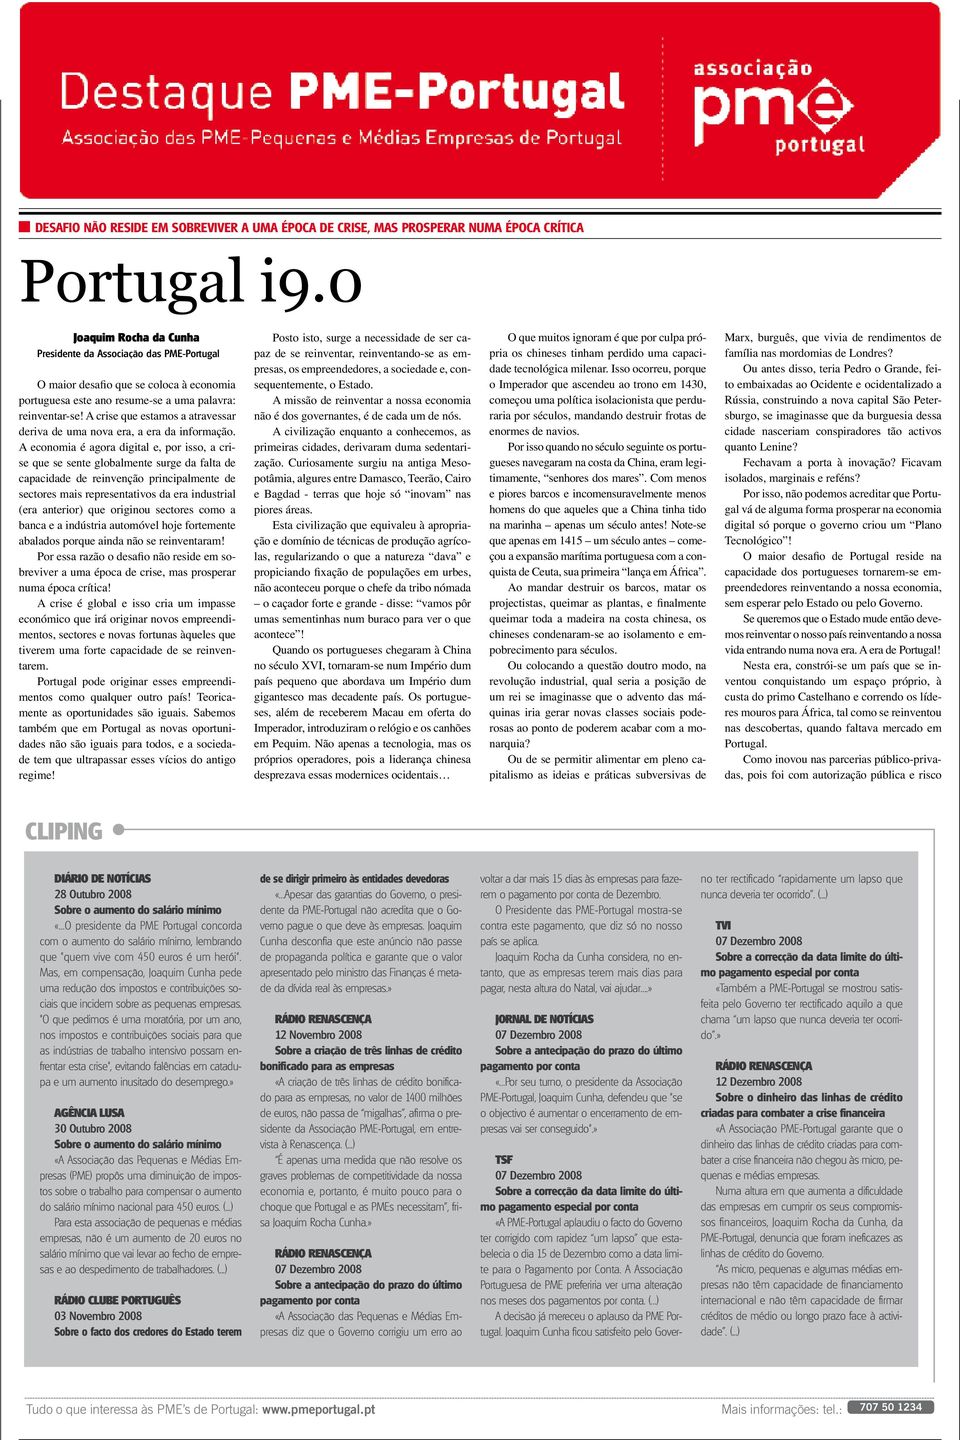 0 Joaquim Rocha da Cunha Posto isto, surge a necessida ser capaz O muitos ignoram é por culpa própria Presinte da Associação das PME-Portugal se reinventar, reinventando-se as em- presas, os